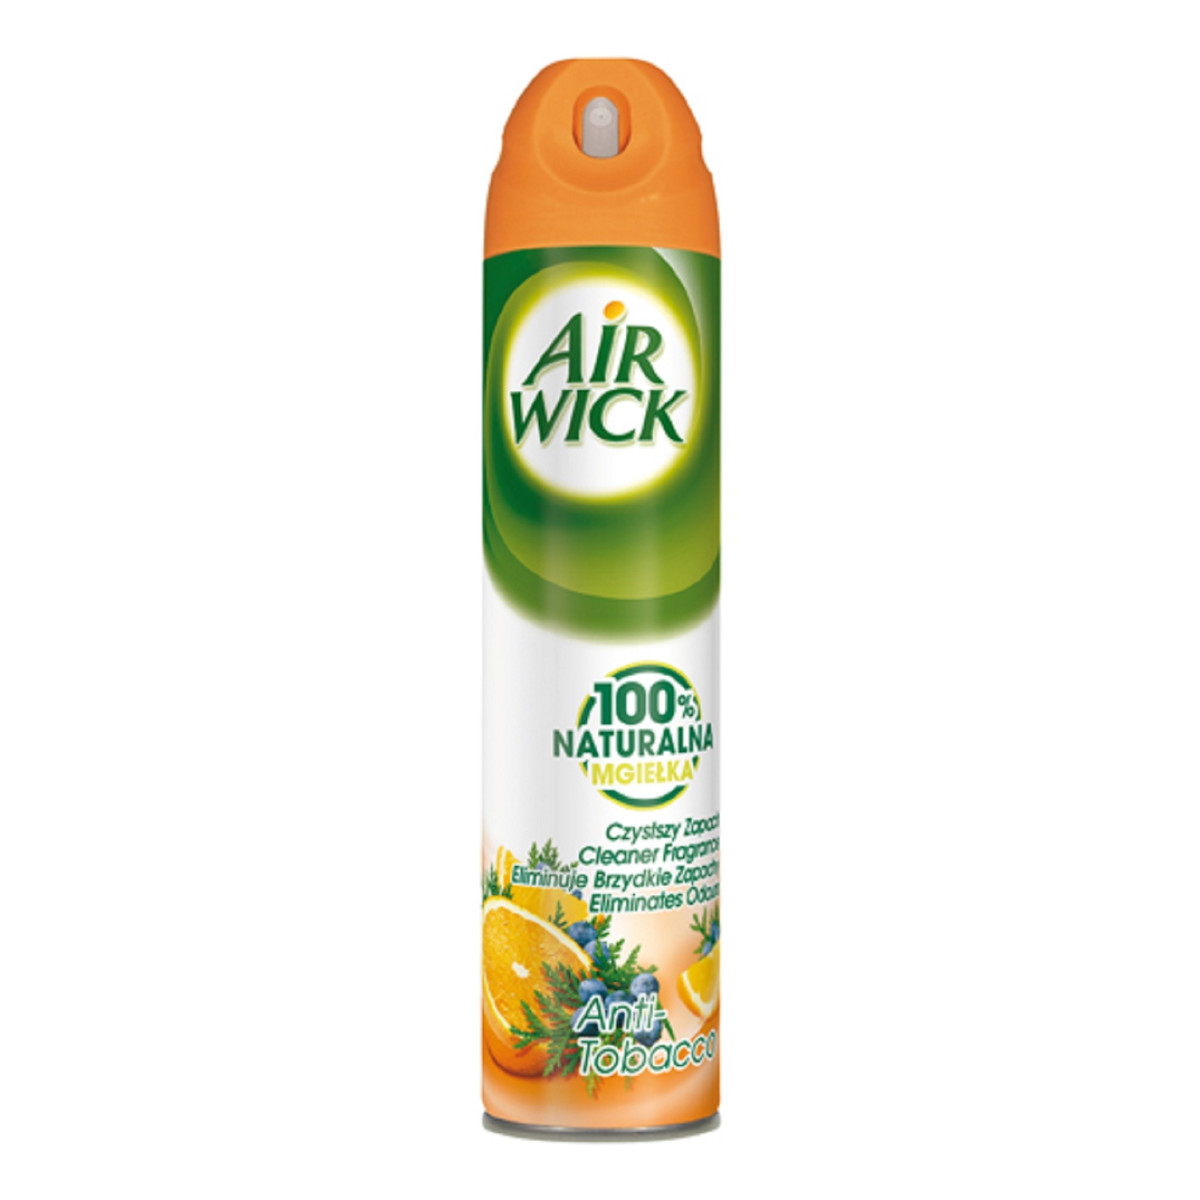 Air Wick 100% Naturalna Mgiełka odświeżacz powietrza Anti-Tabacco 240ml